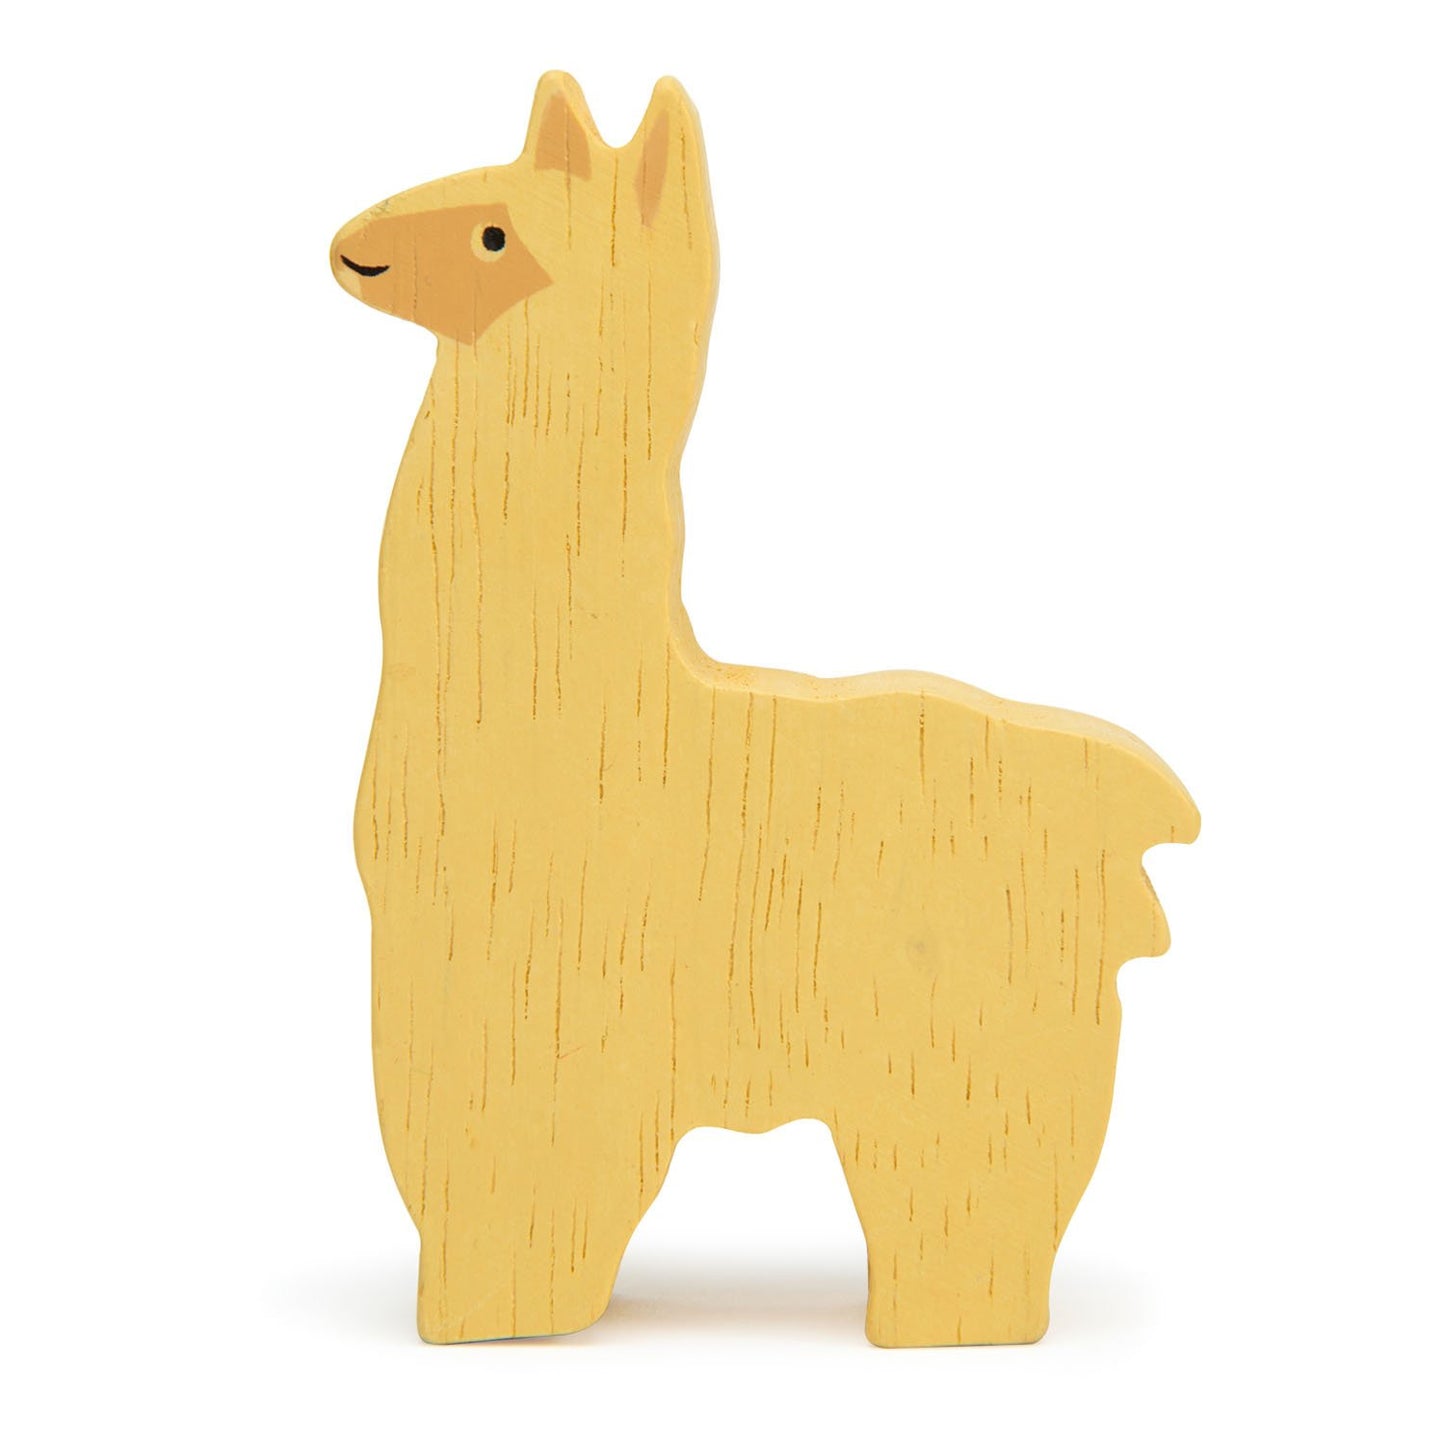 Wooden alpaca figurine front view